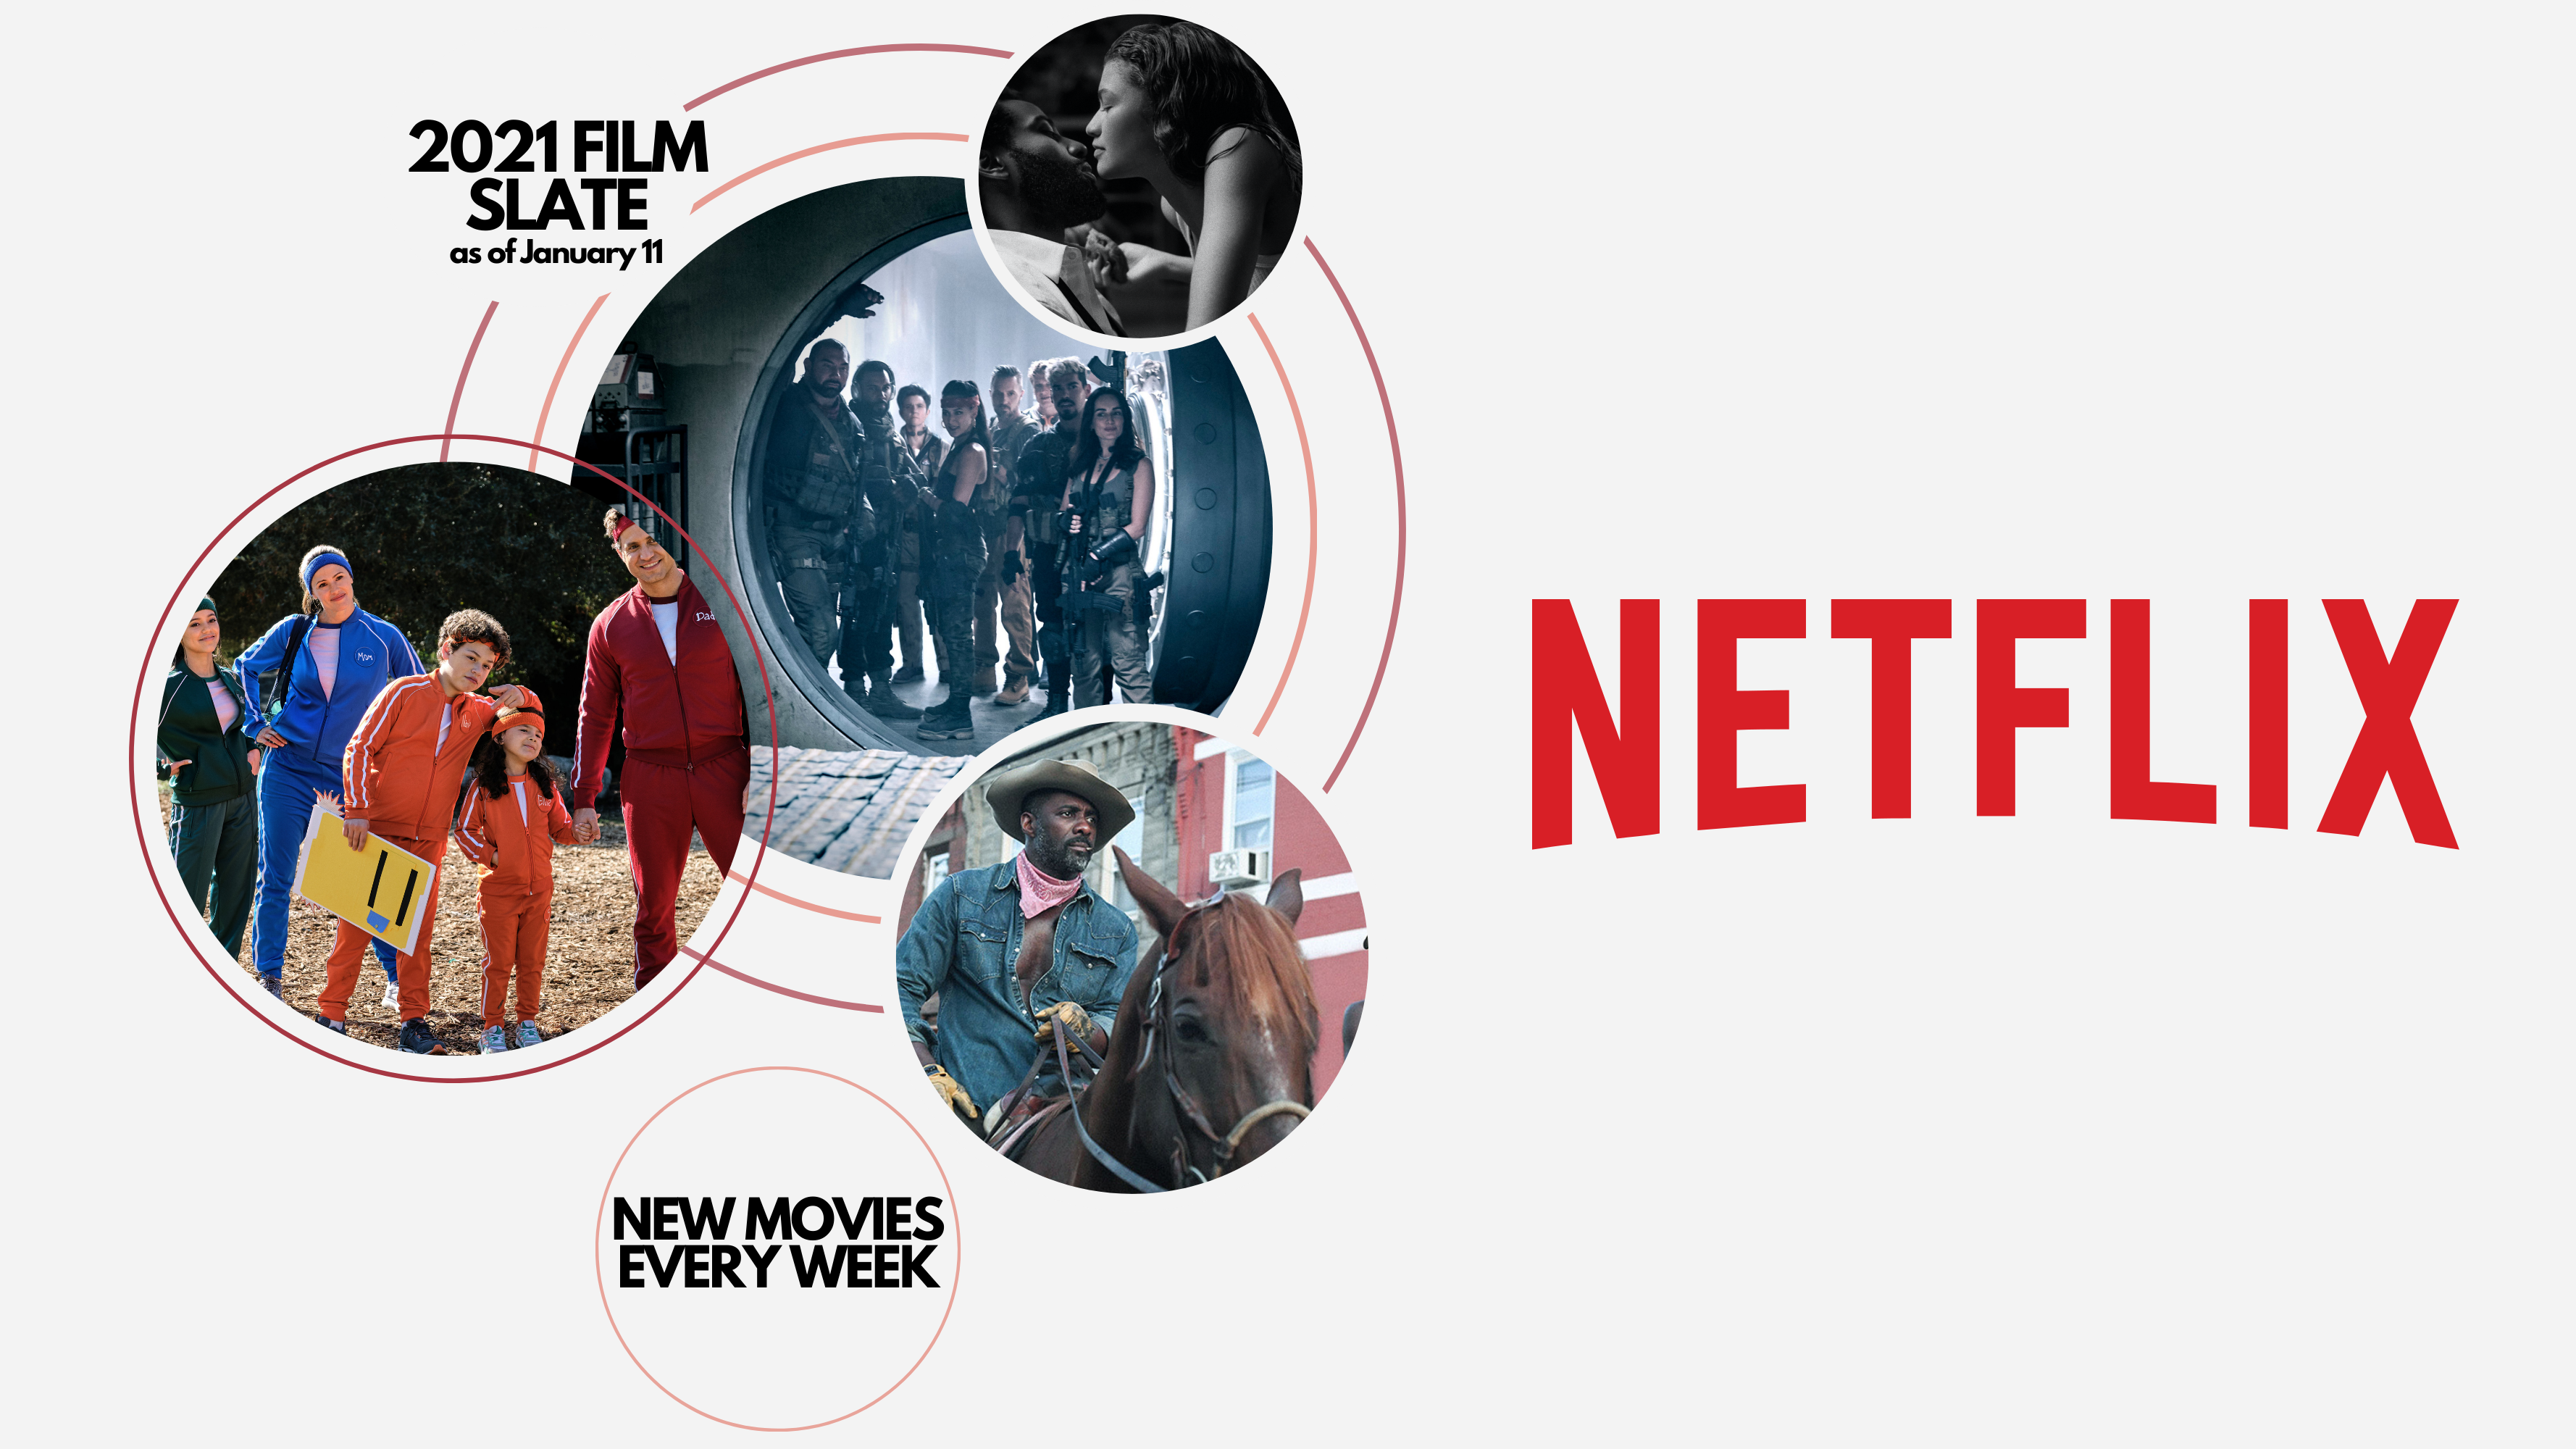 Netflix обещает выпускать по одному новому фильму каждую неделю в 2021 году